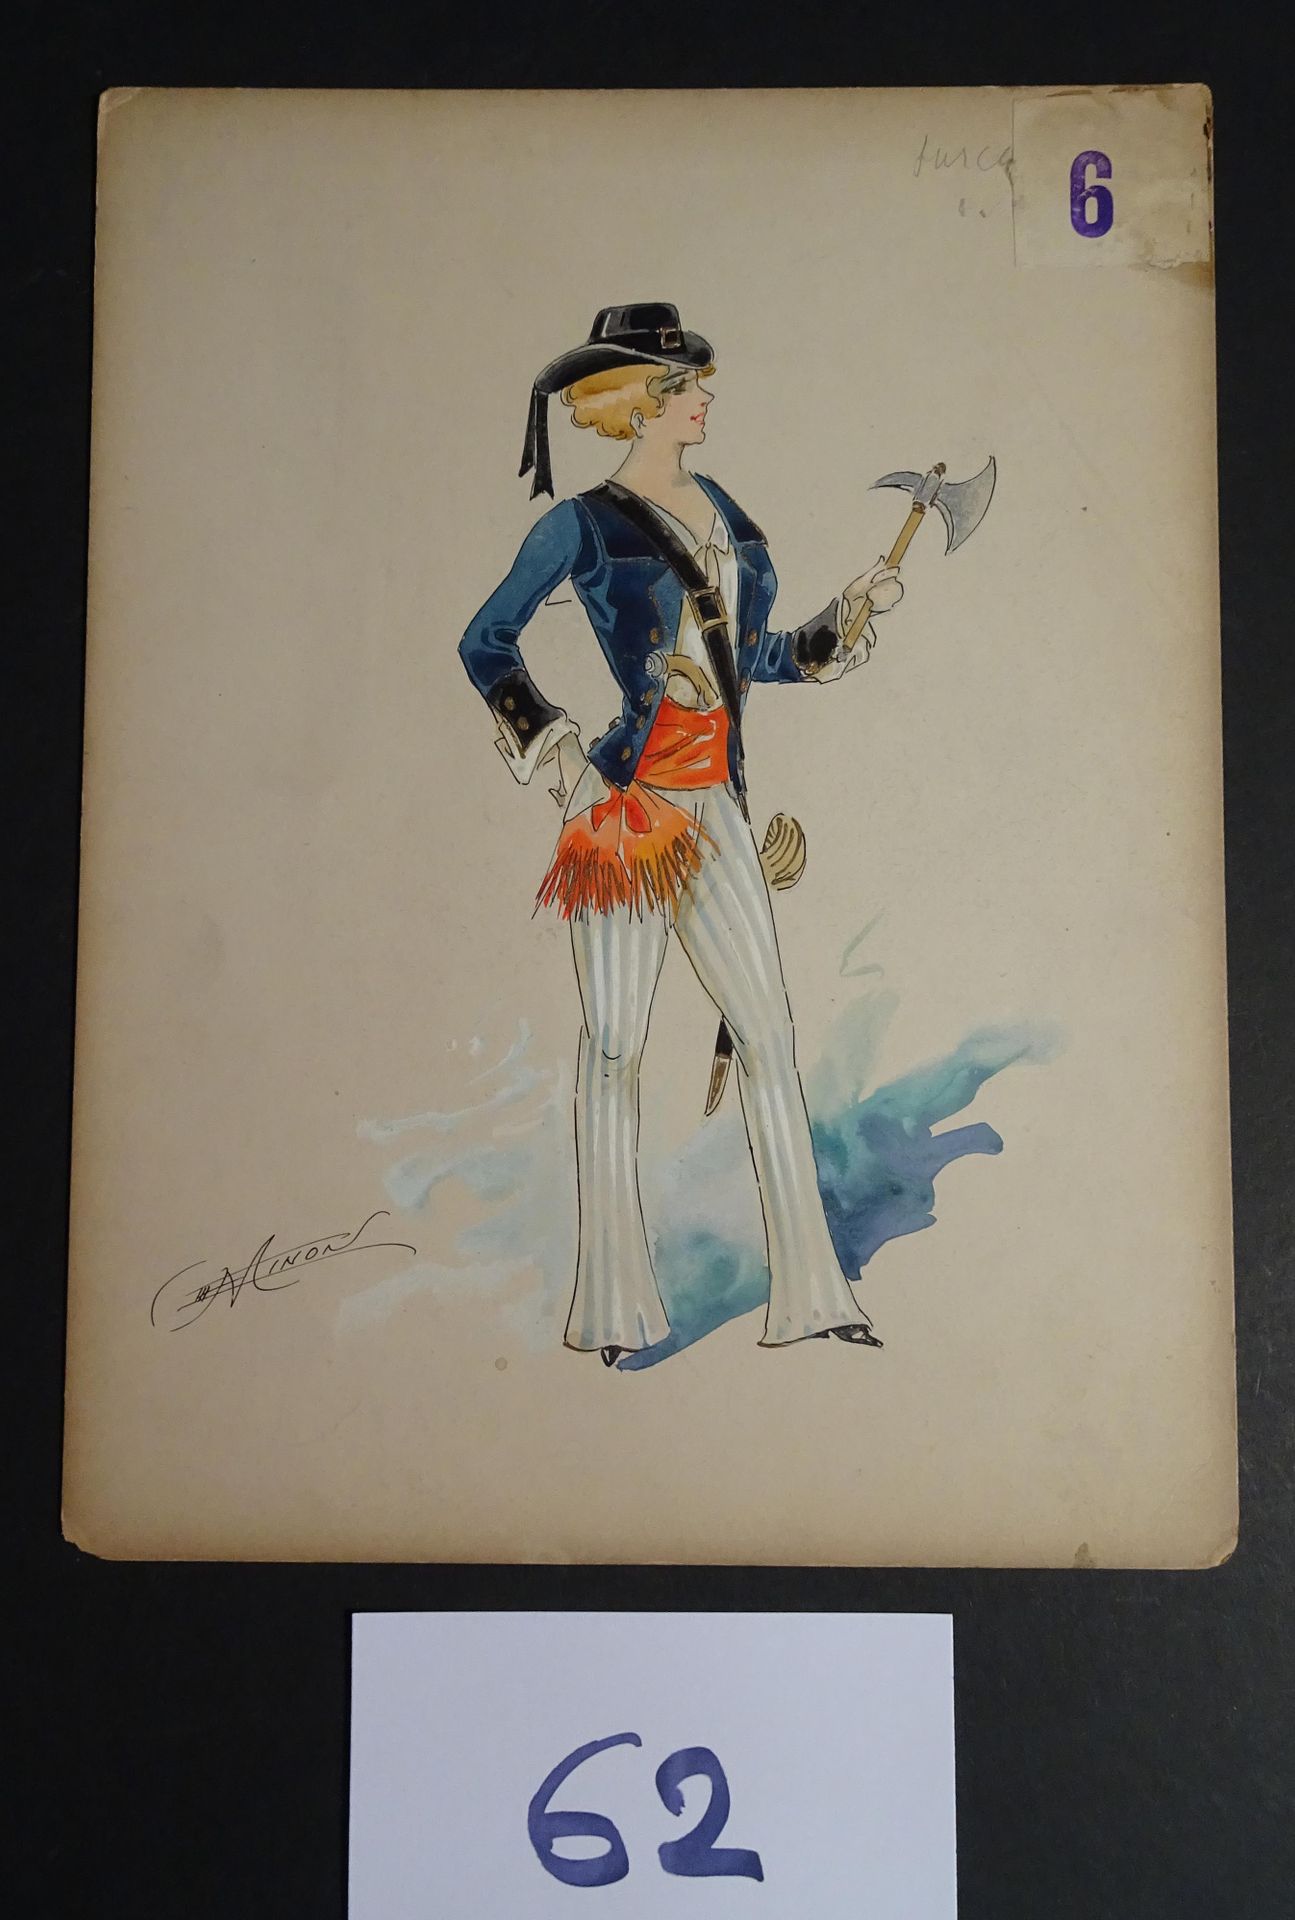 MINON MINON

"Surcouff " c.1880. Maquette de costume pour une revue. Aquarelle g&hellip;